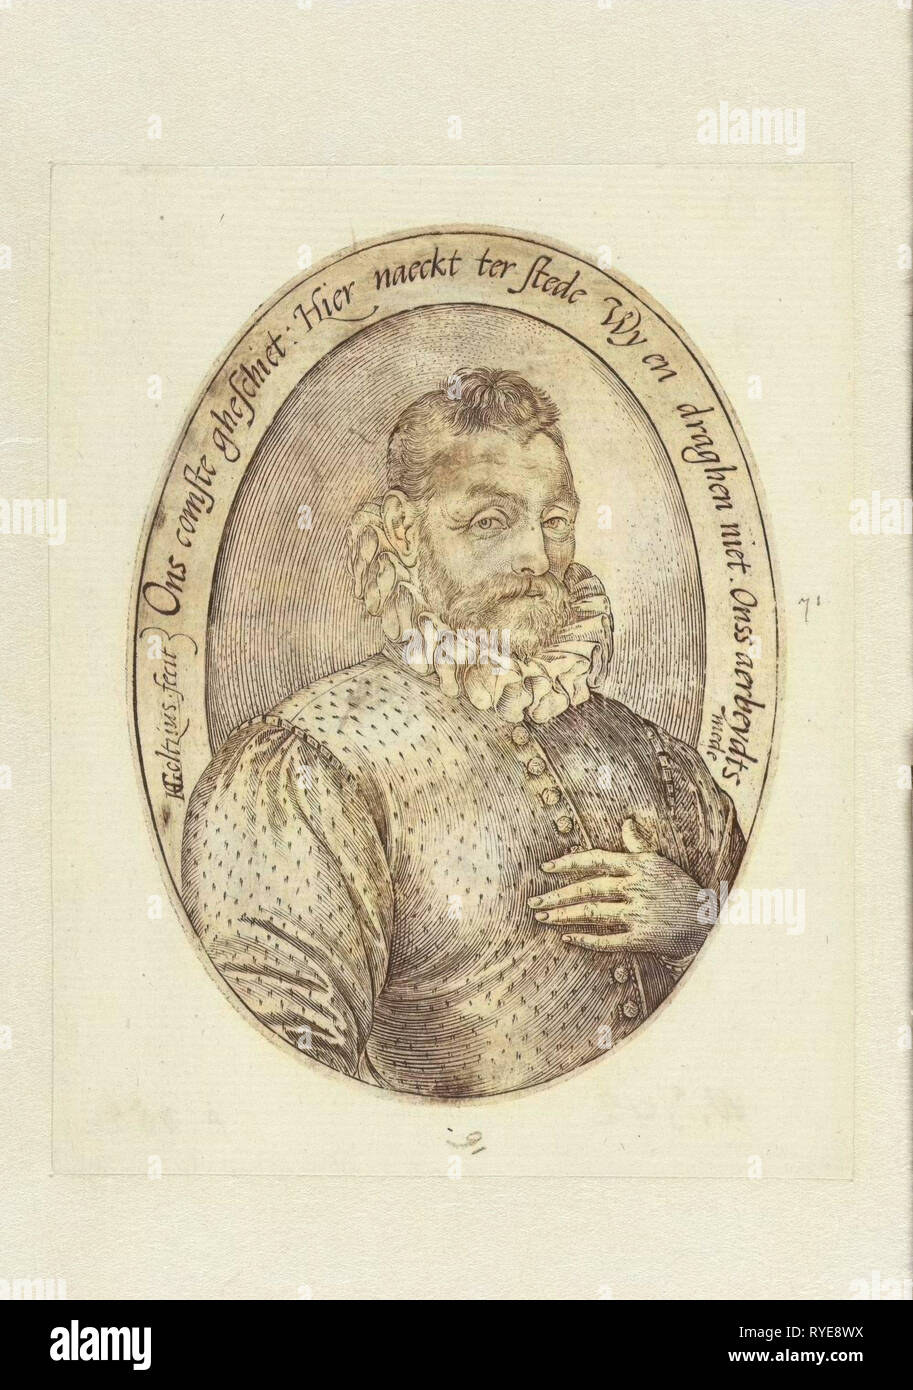 Oval mann Portrait mit halber Länge, die linke Hand auf die Brust, mit plissiertem Kragen und knöpfte seine Jacke auf der Brust. Inschrift auf Niederländisch. Gegenstück von ähnlichen Porträt einer Frau, drucken Teekocher: Hendrick Goltzius (auf Objekt erwähnt), 1581 - 1585 Stockfoto